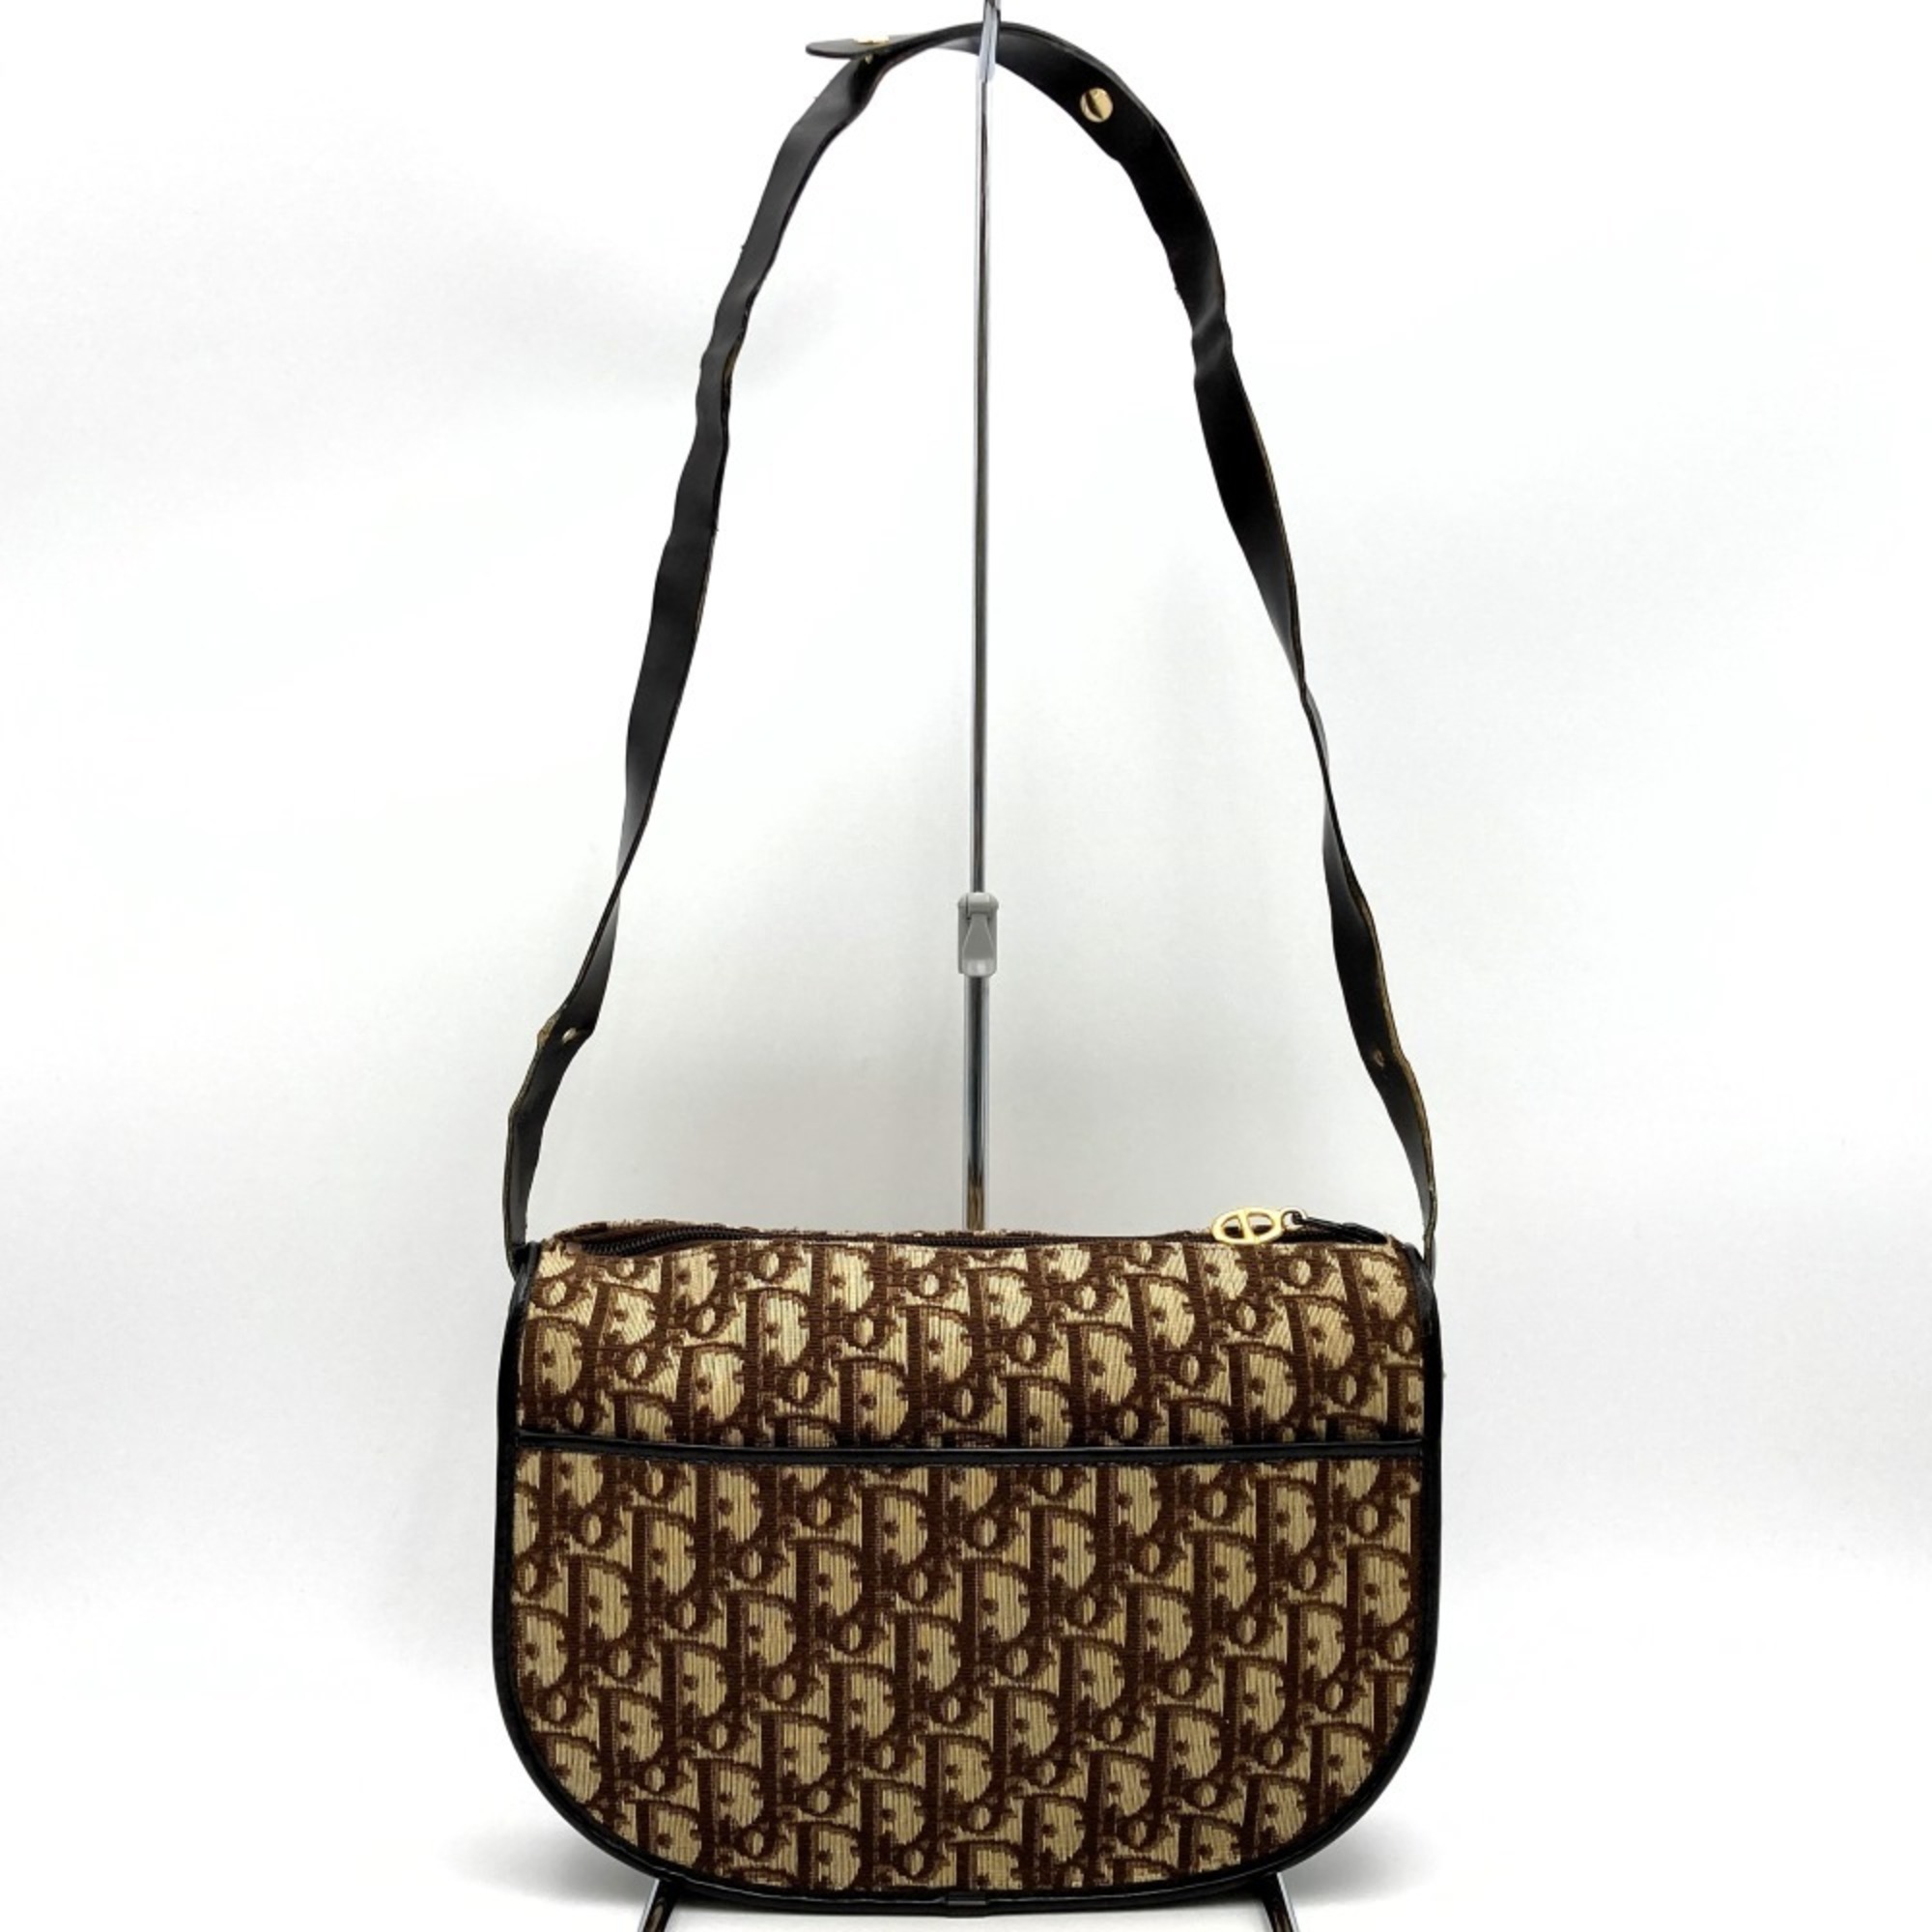 Christian Dior Shoulder Bag Trotter Pattern Brown Canvas Women's